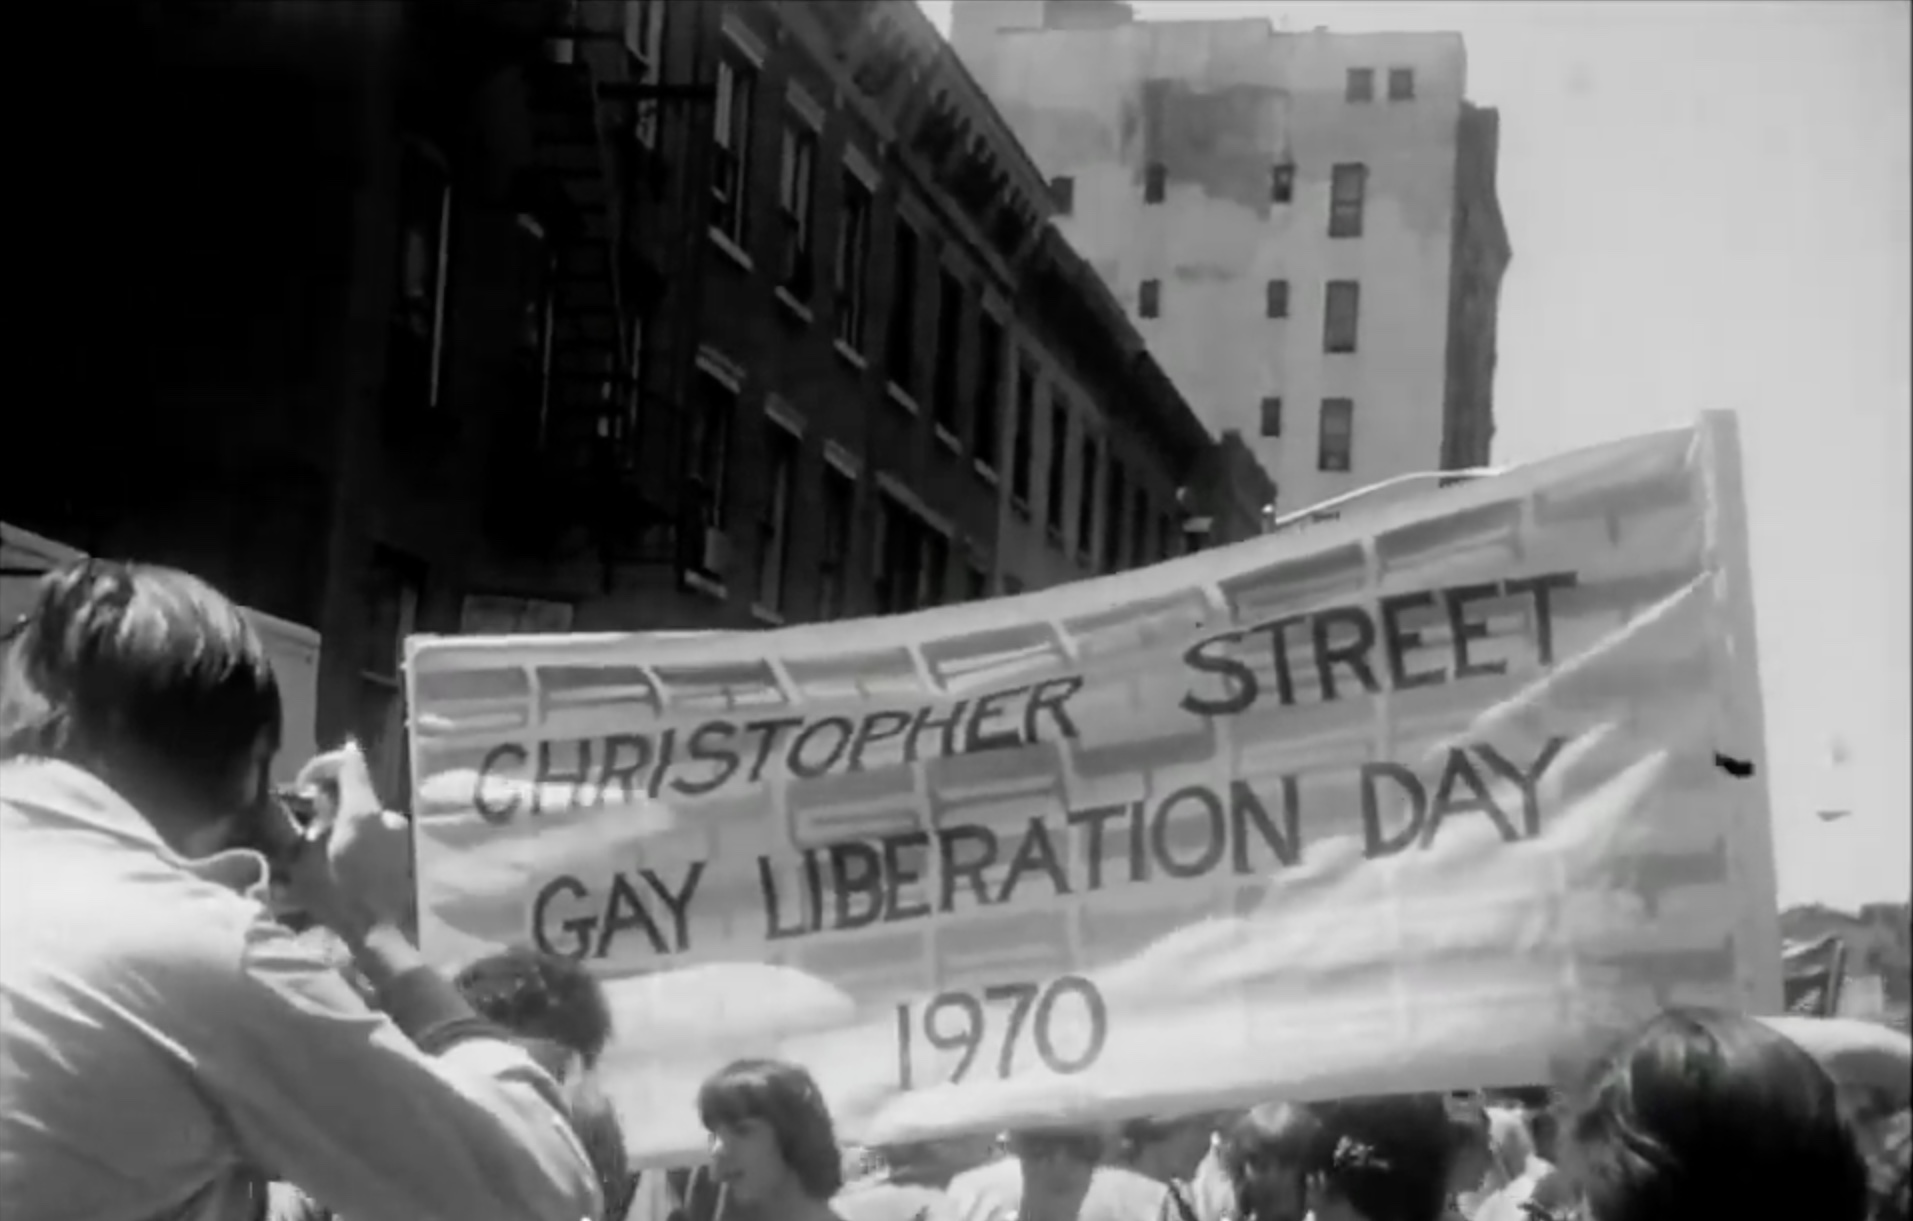 Liberation Day 1970